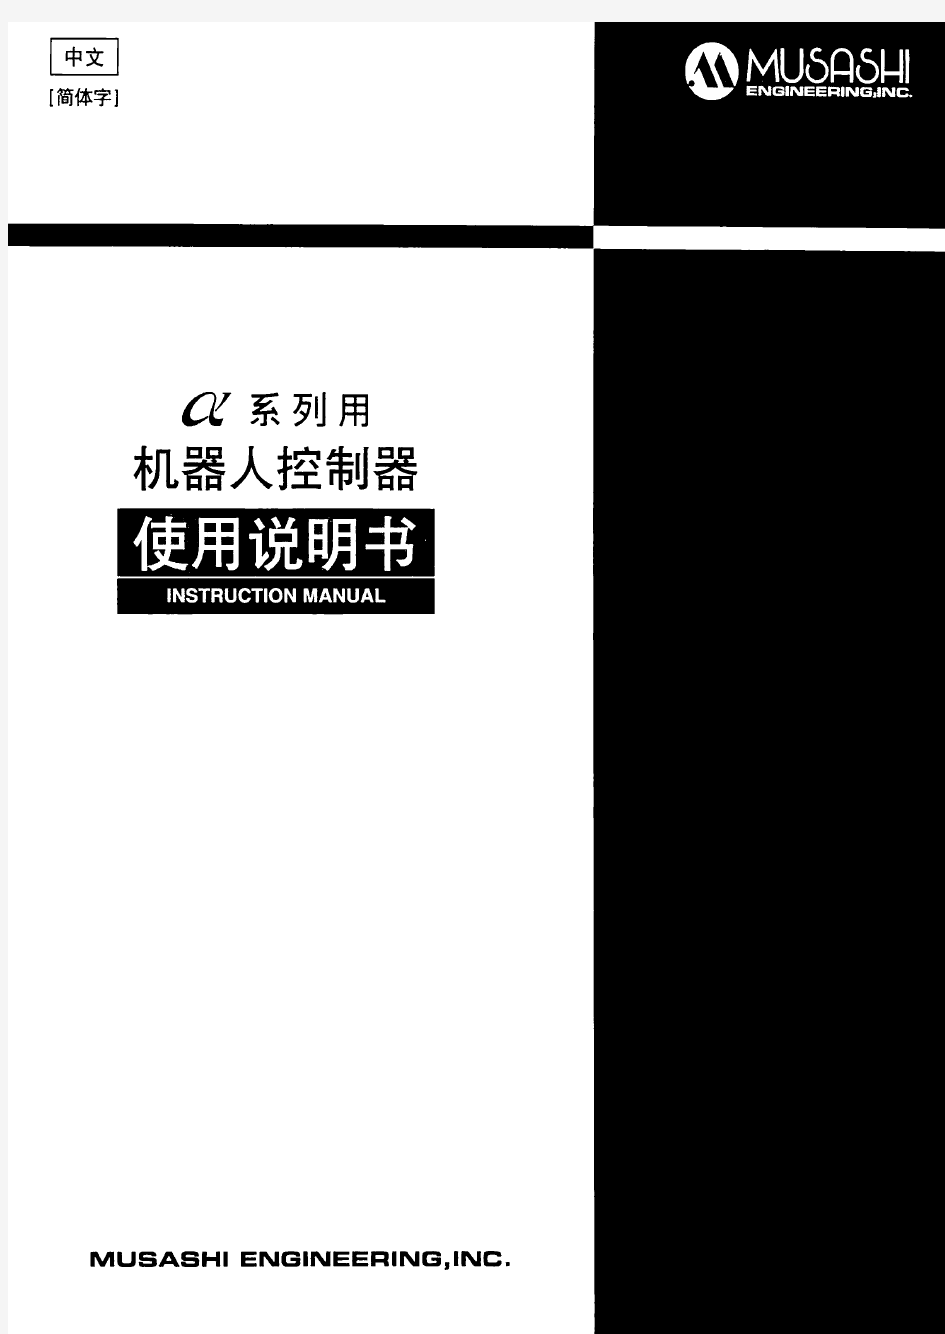 武藏自动机musashi 新式 muCAD Ⅱ-a-X.X使用说明书